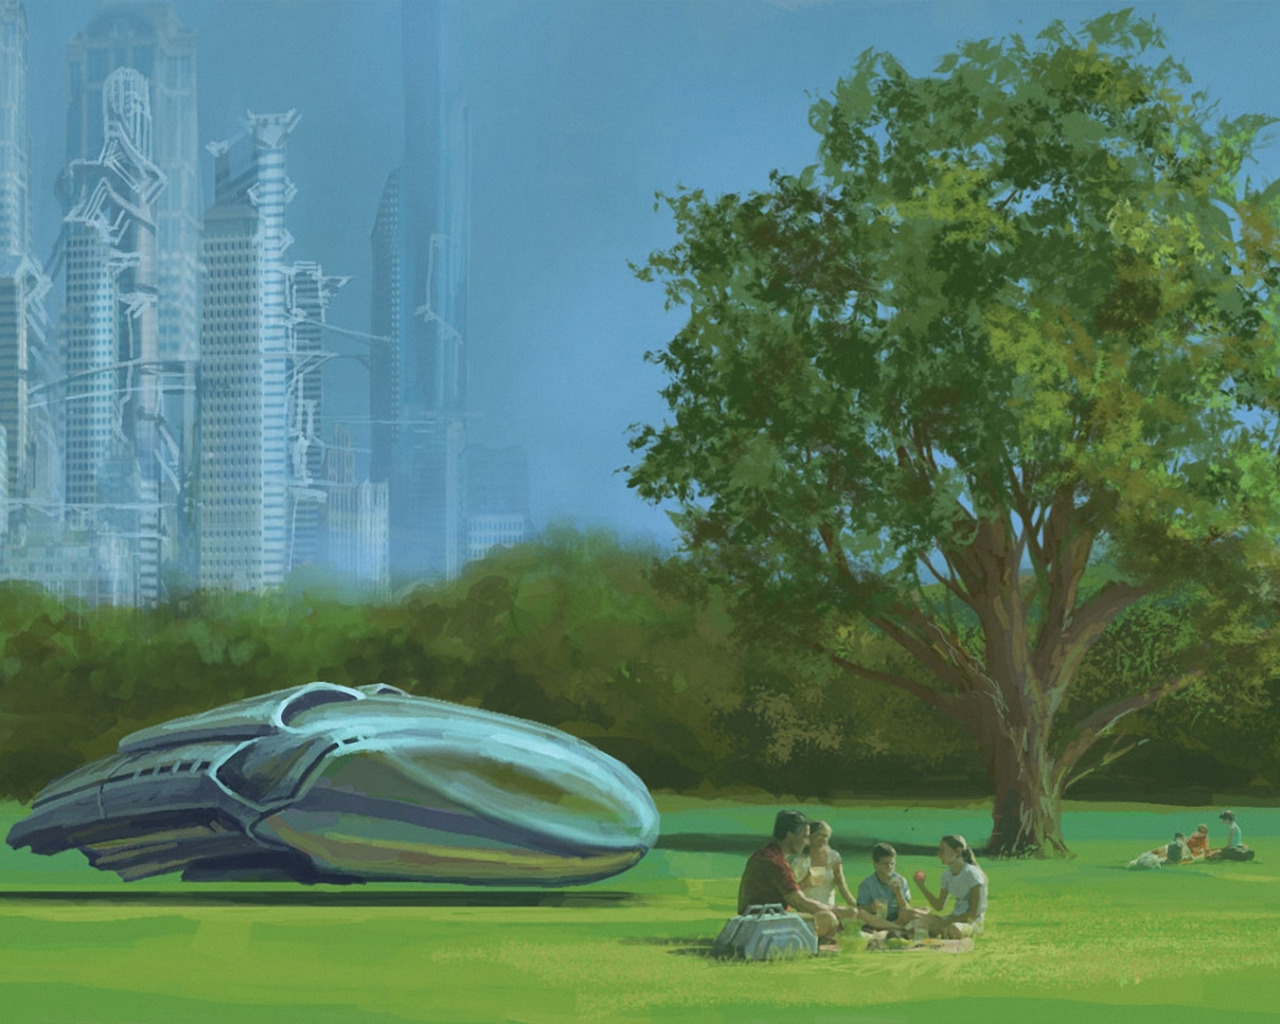 Род будущего. Экогород будущего концепт Левиафан. Лес в будущем. Прекрасное будущее. Зеленое будущее планеты.